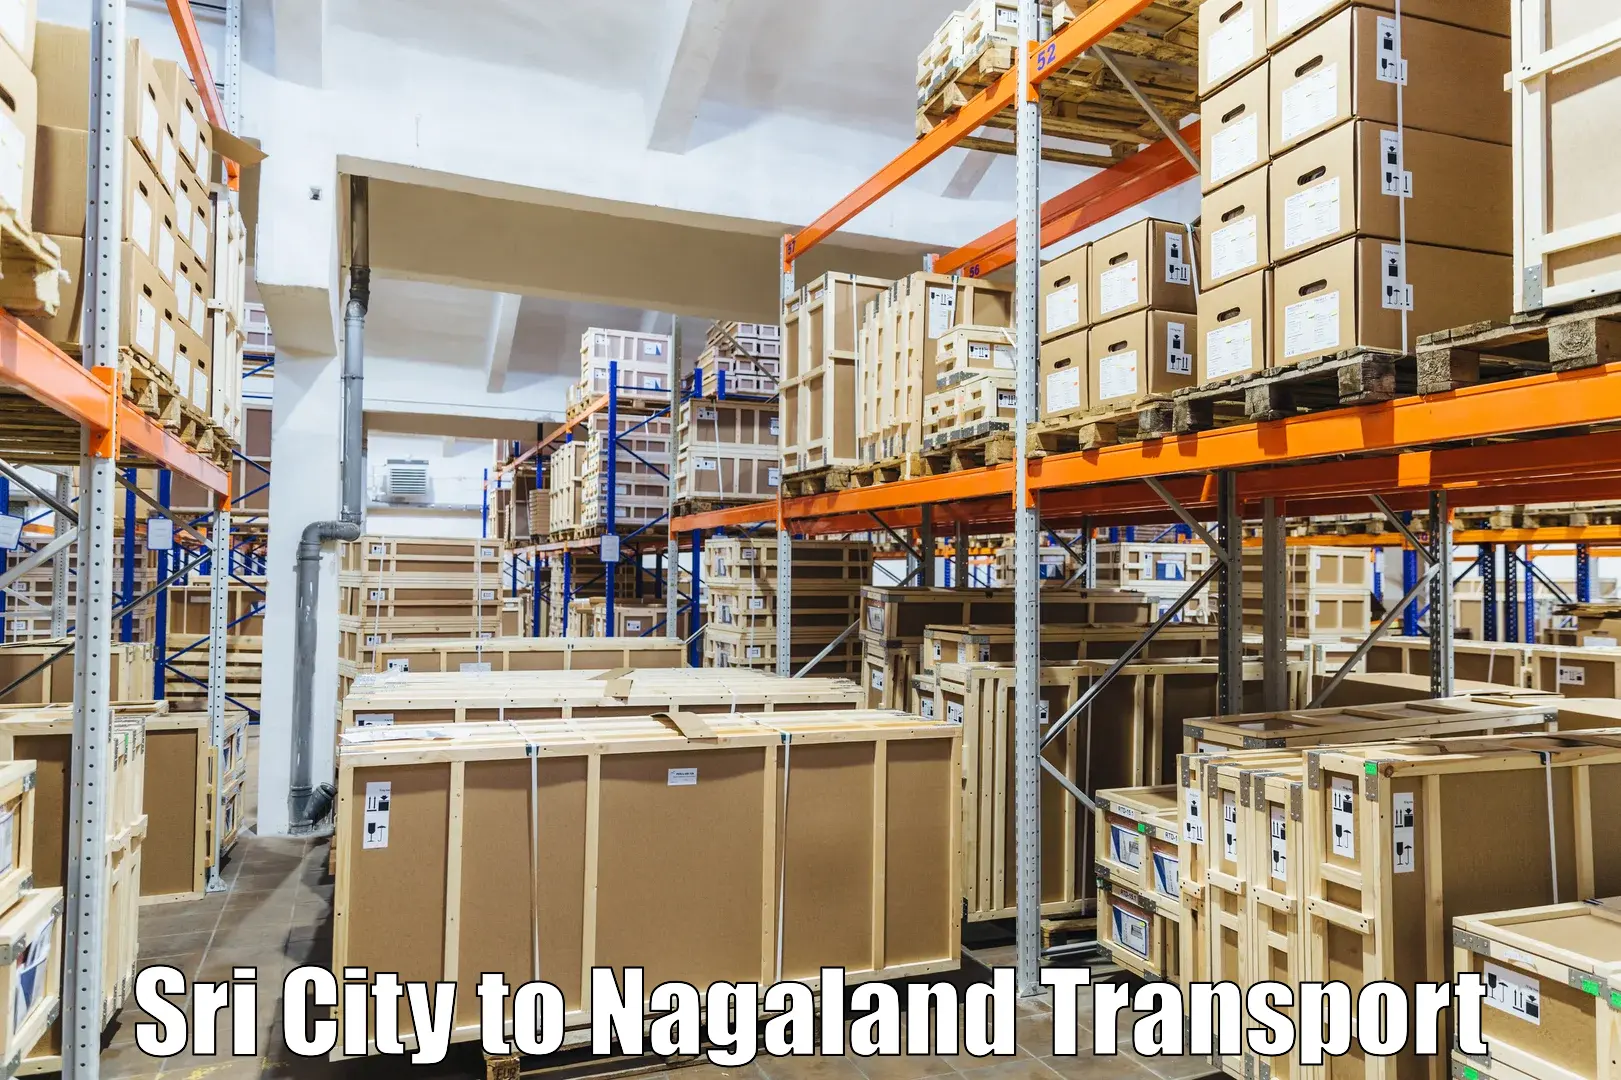 Nearby transport service Sri City to Nagaland